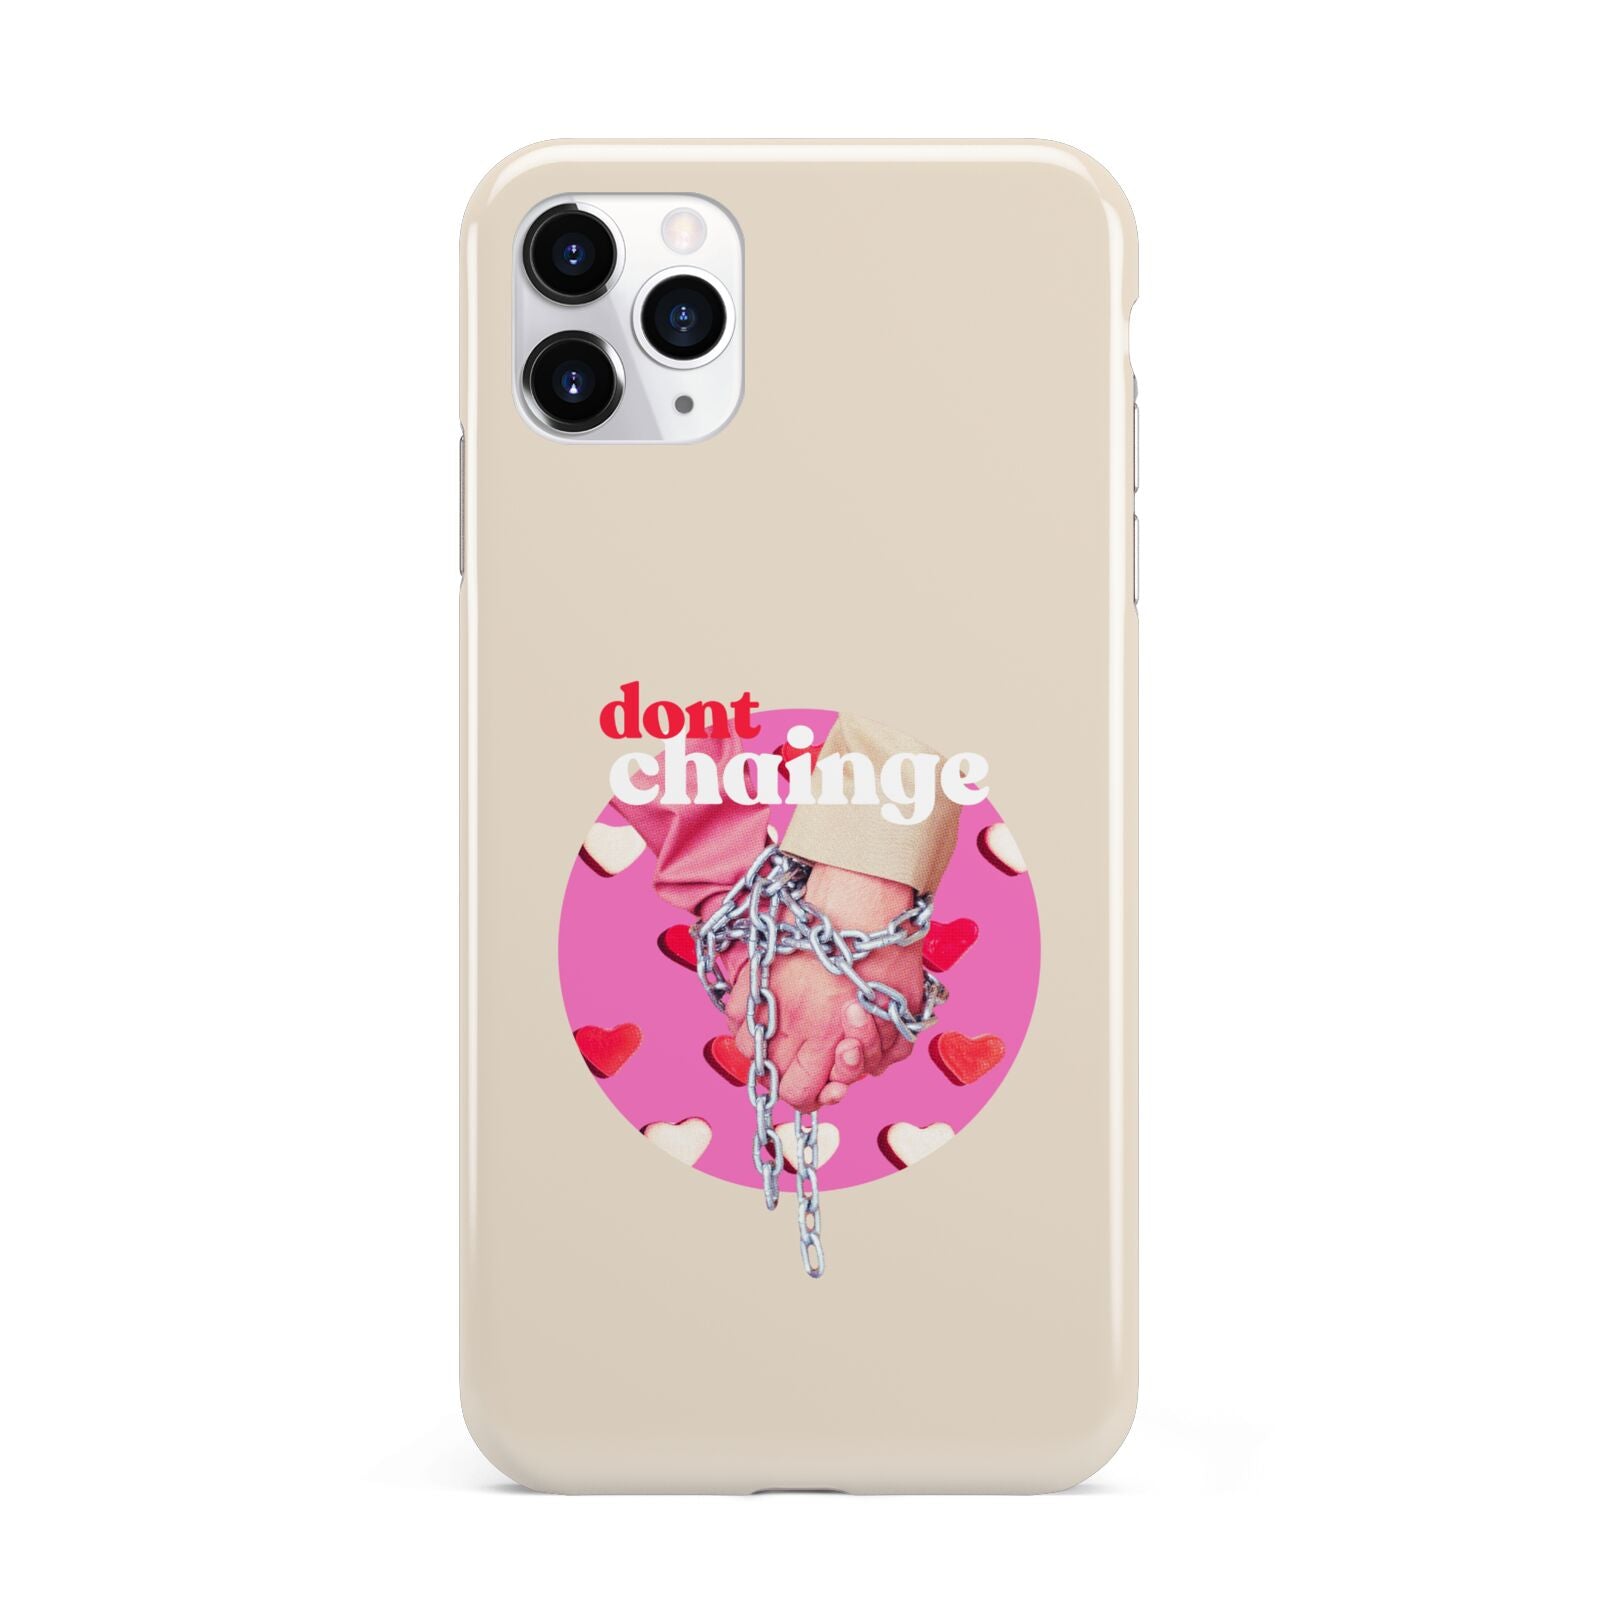 Retro Valentines Quote iPhone 11 Pro Max 3D Tough Case